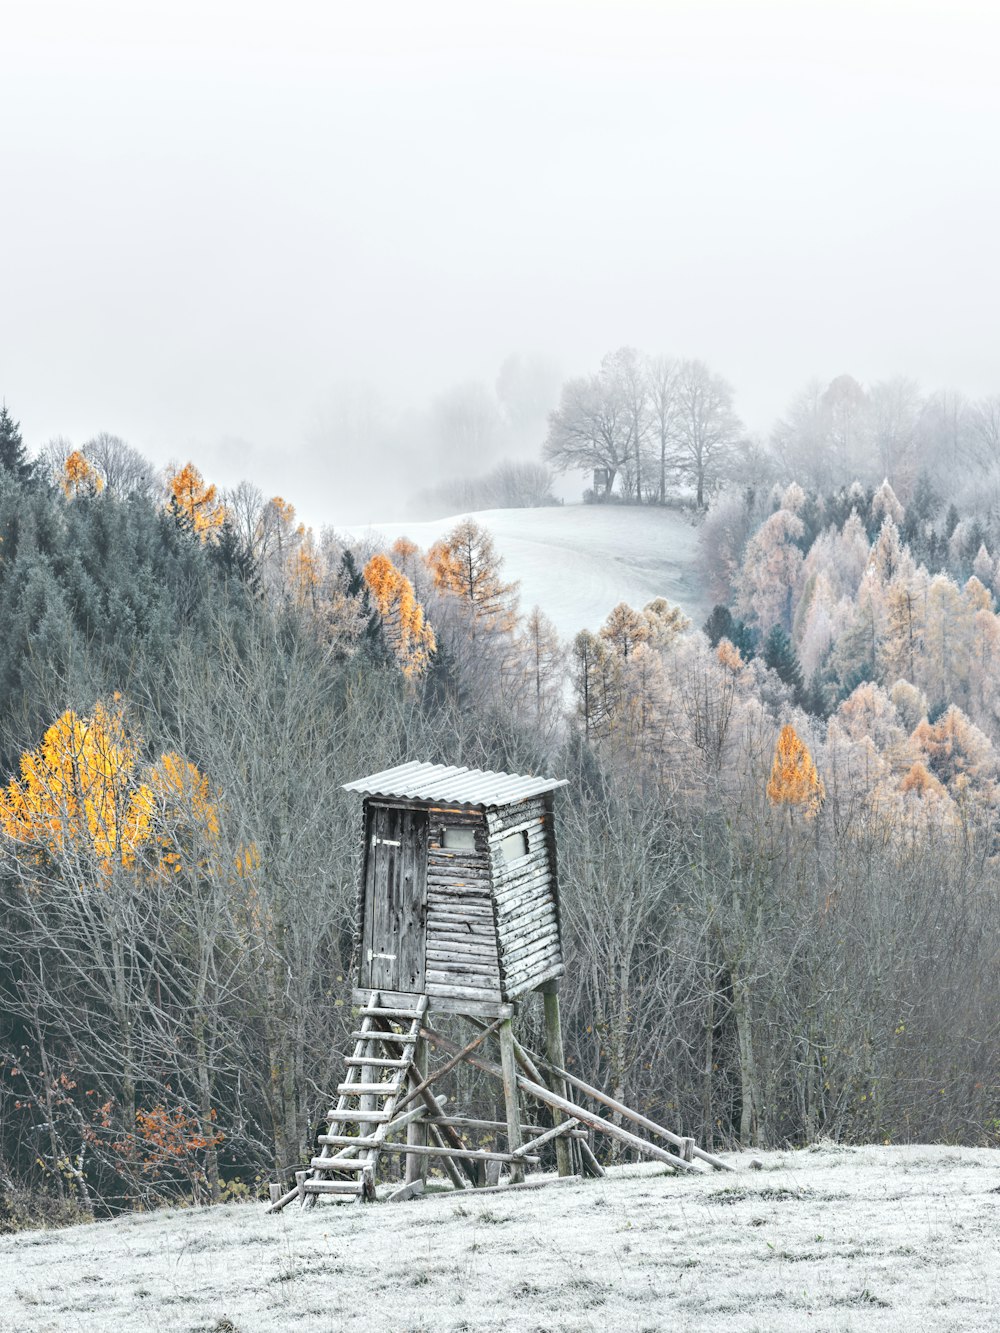 Wachturm mit Schnee bedeckt